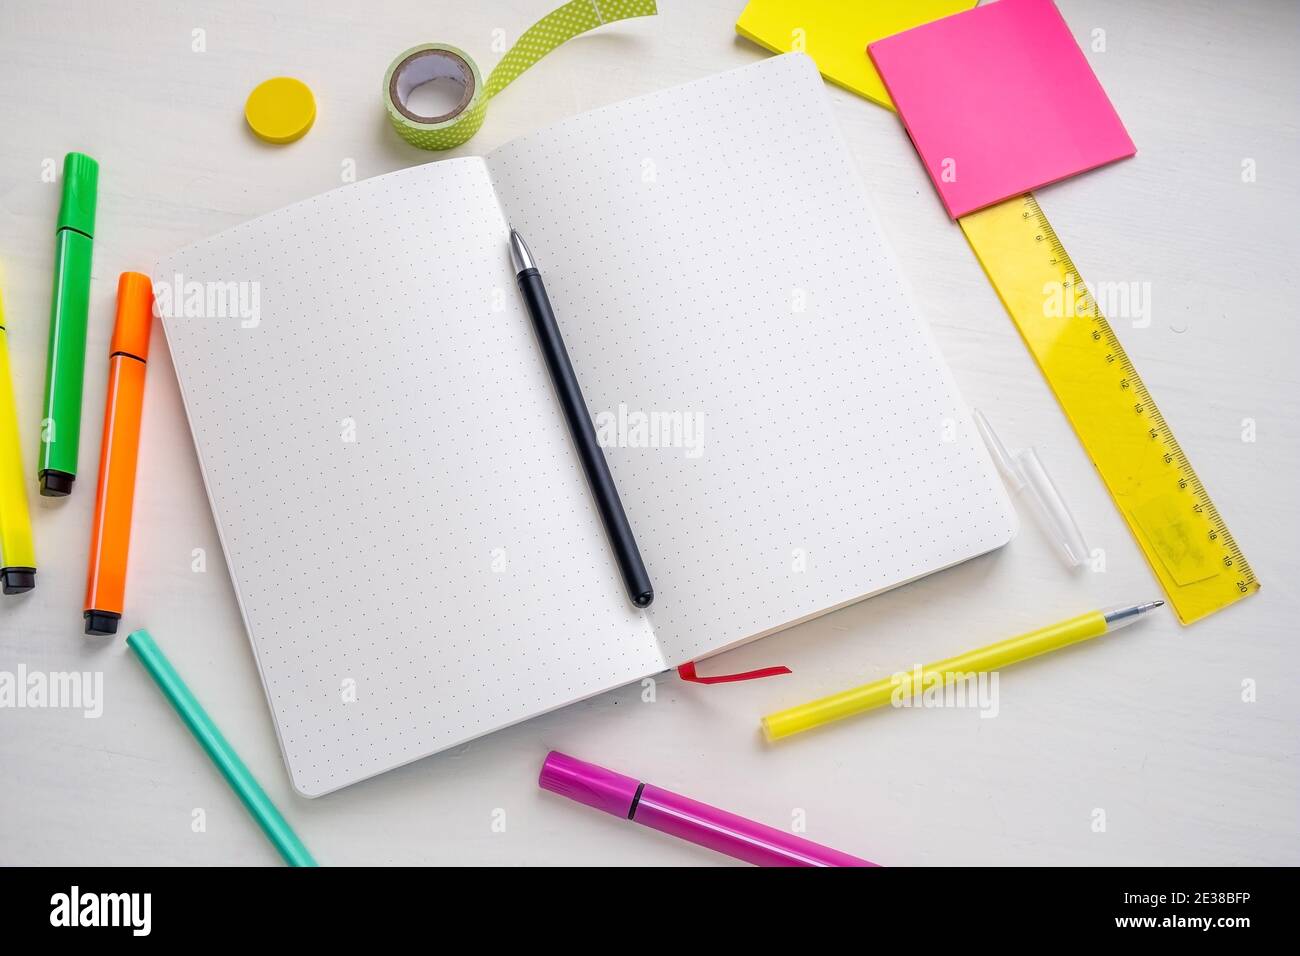 Öffnen Sie leere Kugel Journal Planer mit gepunkteten Seiten mit einem Stift, Marker, Lineal, Aufkleber.. Planung und intelligentes Zeitmanagement-Konzept Stockfoto